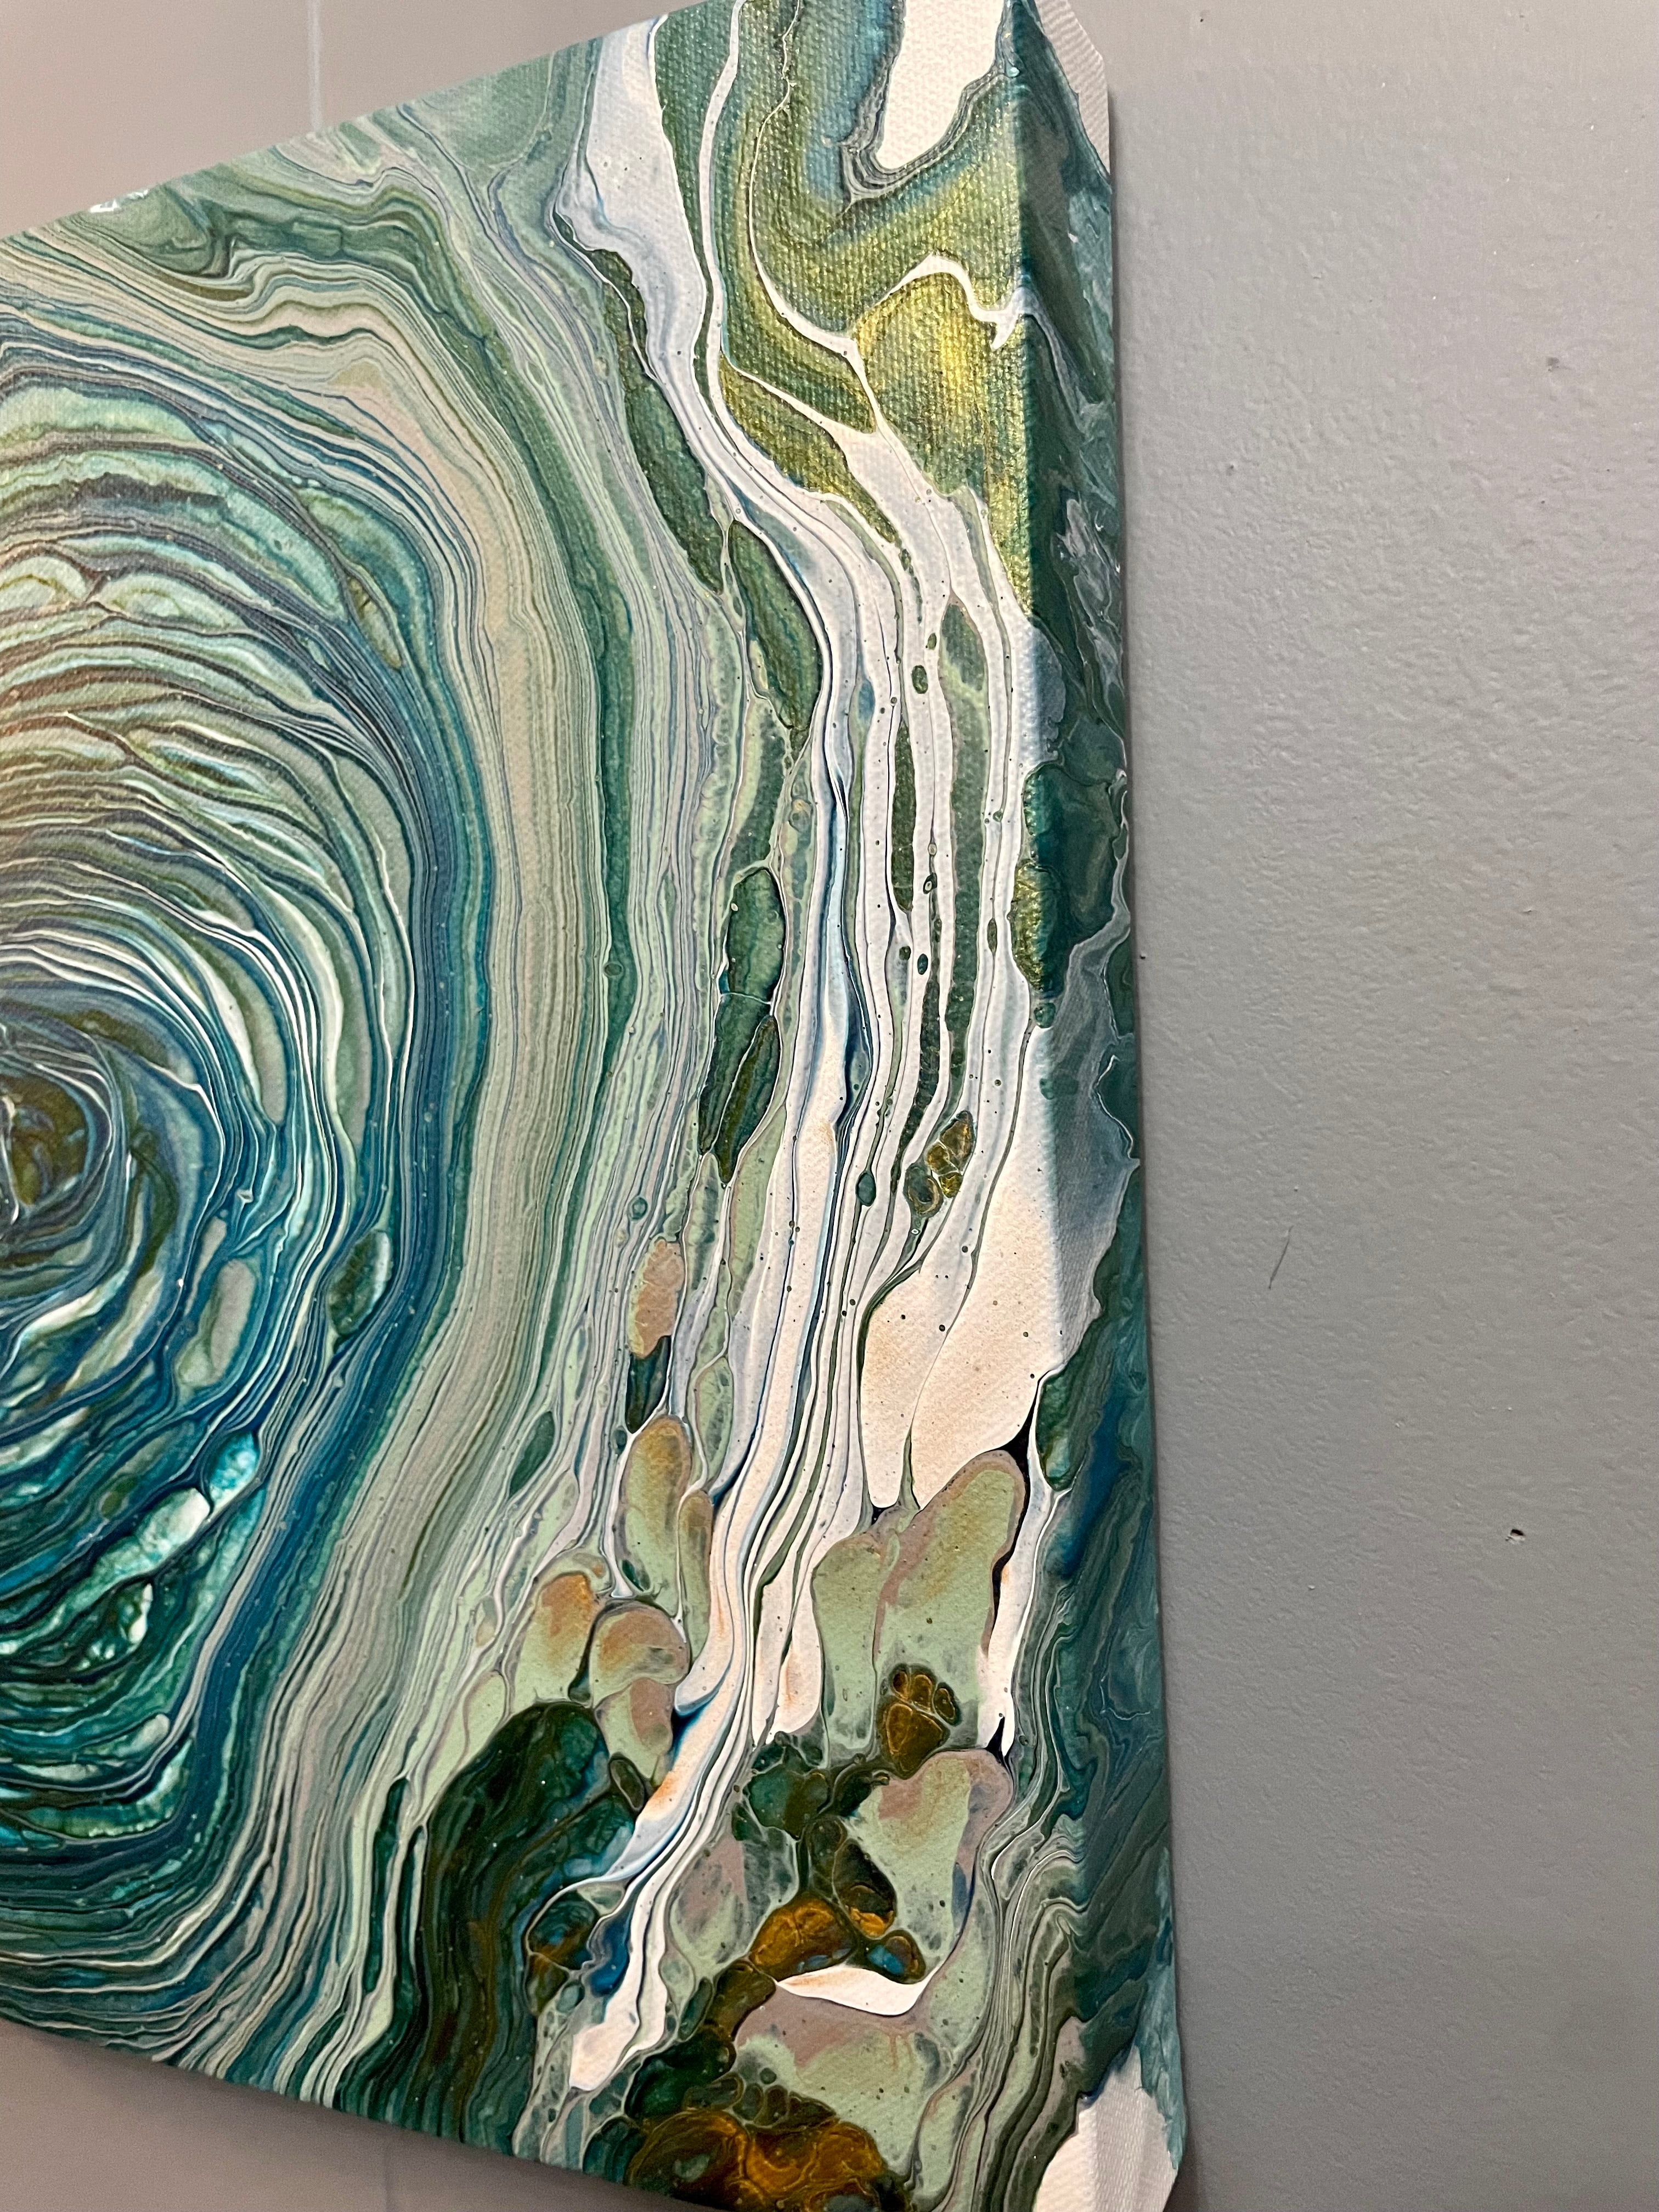 Dive deep” 12x12 abstract fluid art